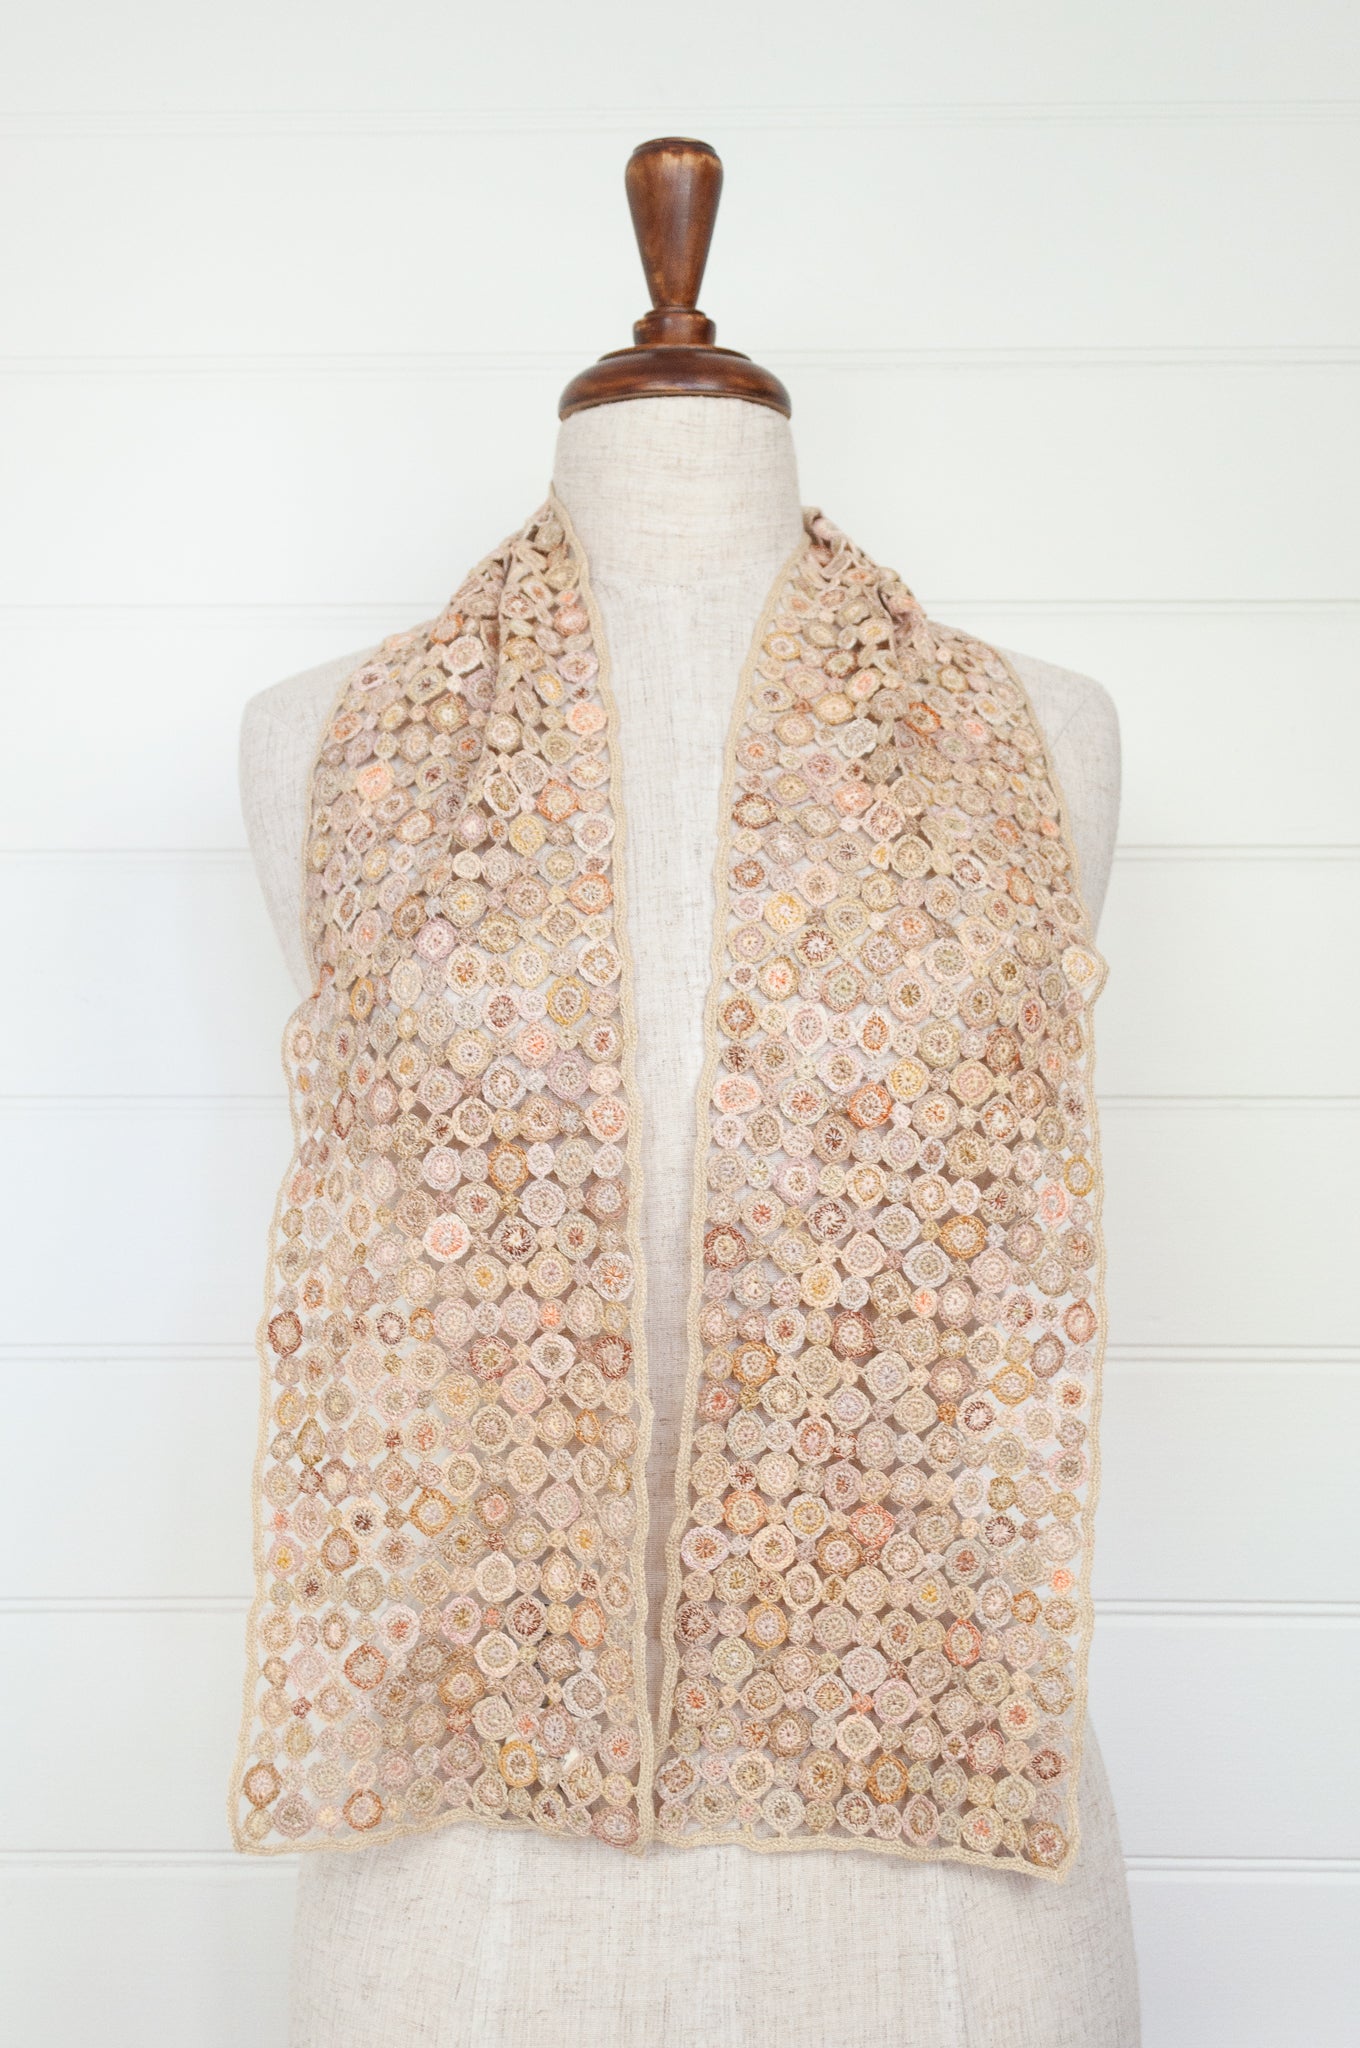 Sophie Digard crochet linen scarf Pastille Pop Minus in Noon, soft warm neutral palette.